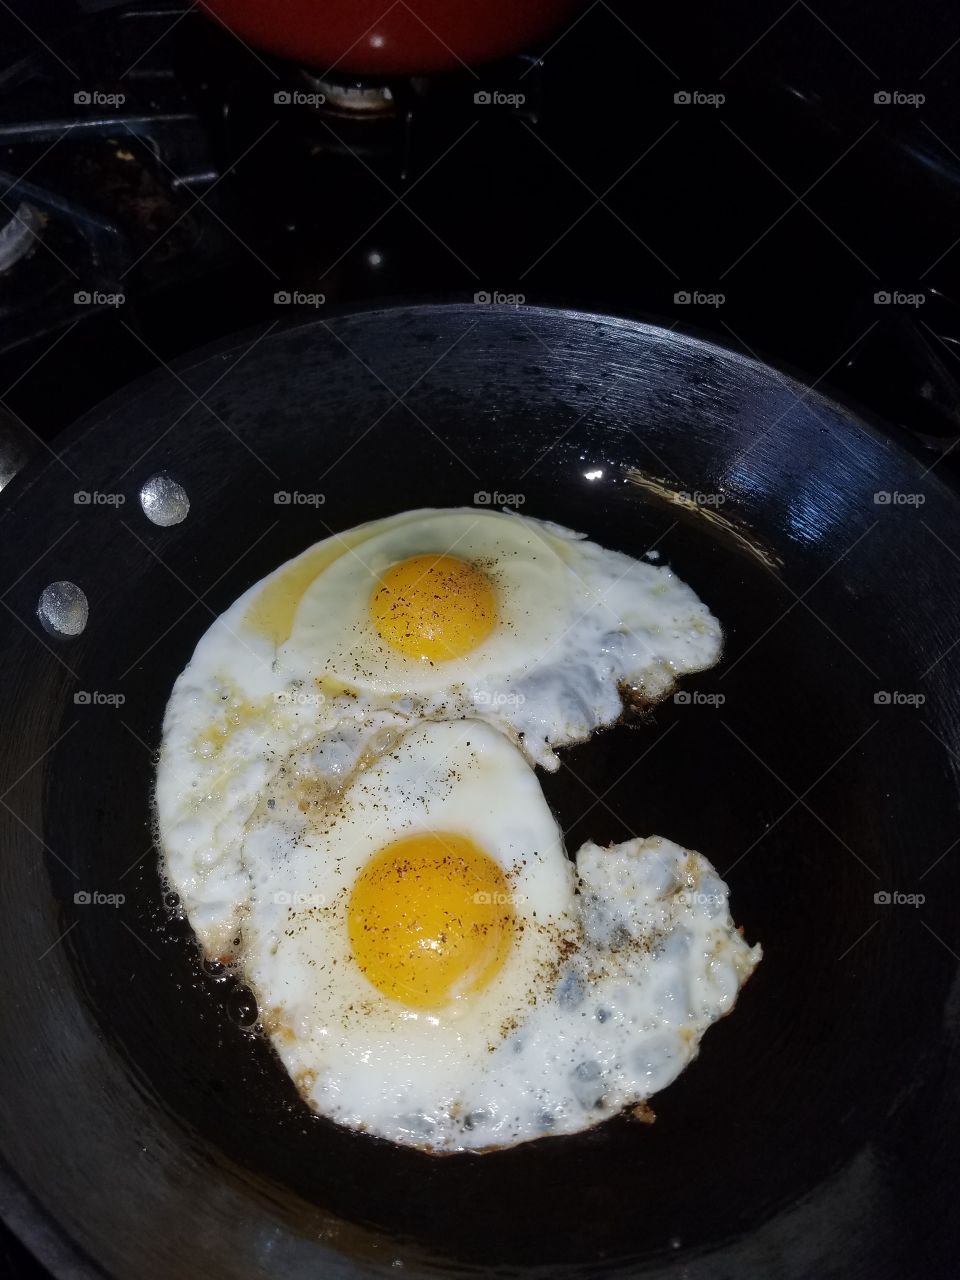 Egg face